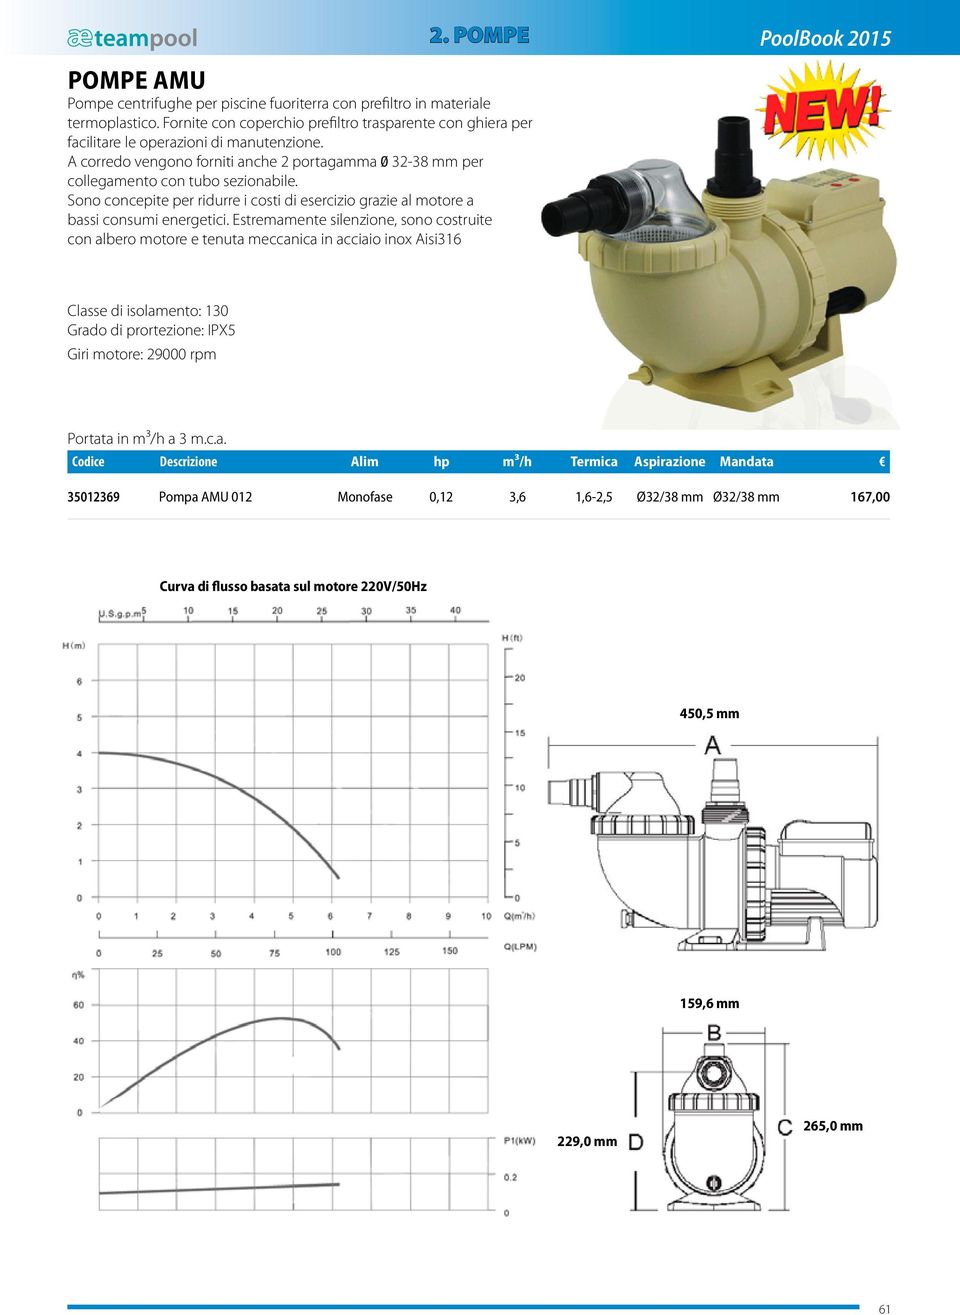 turbina minuto centrifughe ad alta efficienza (IE-2), per POMPE AMU pompe Pompe centrifughe per piscine fuoriterra con prefiltro in materiale termoplastico.